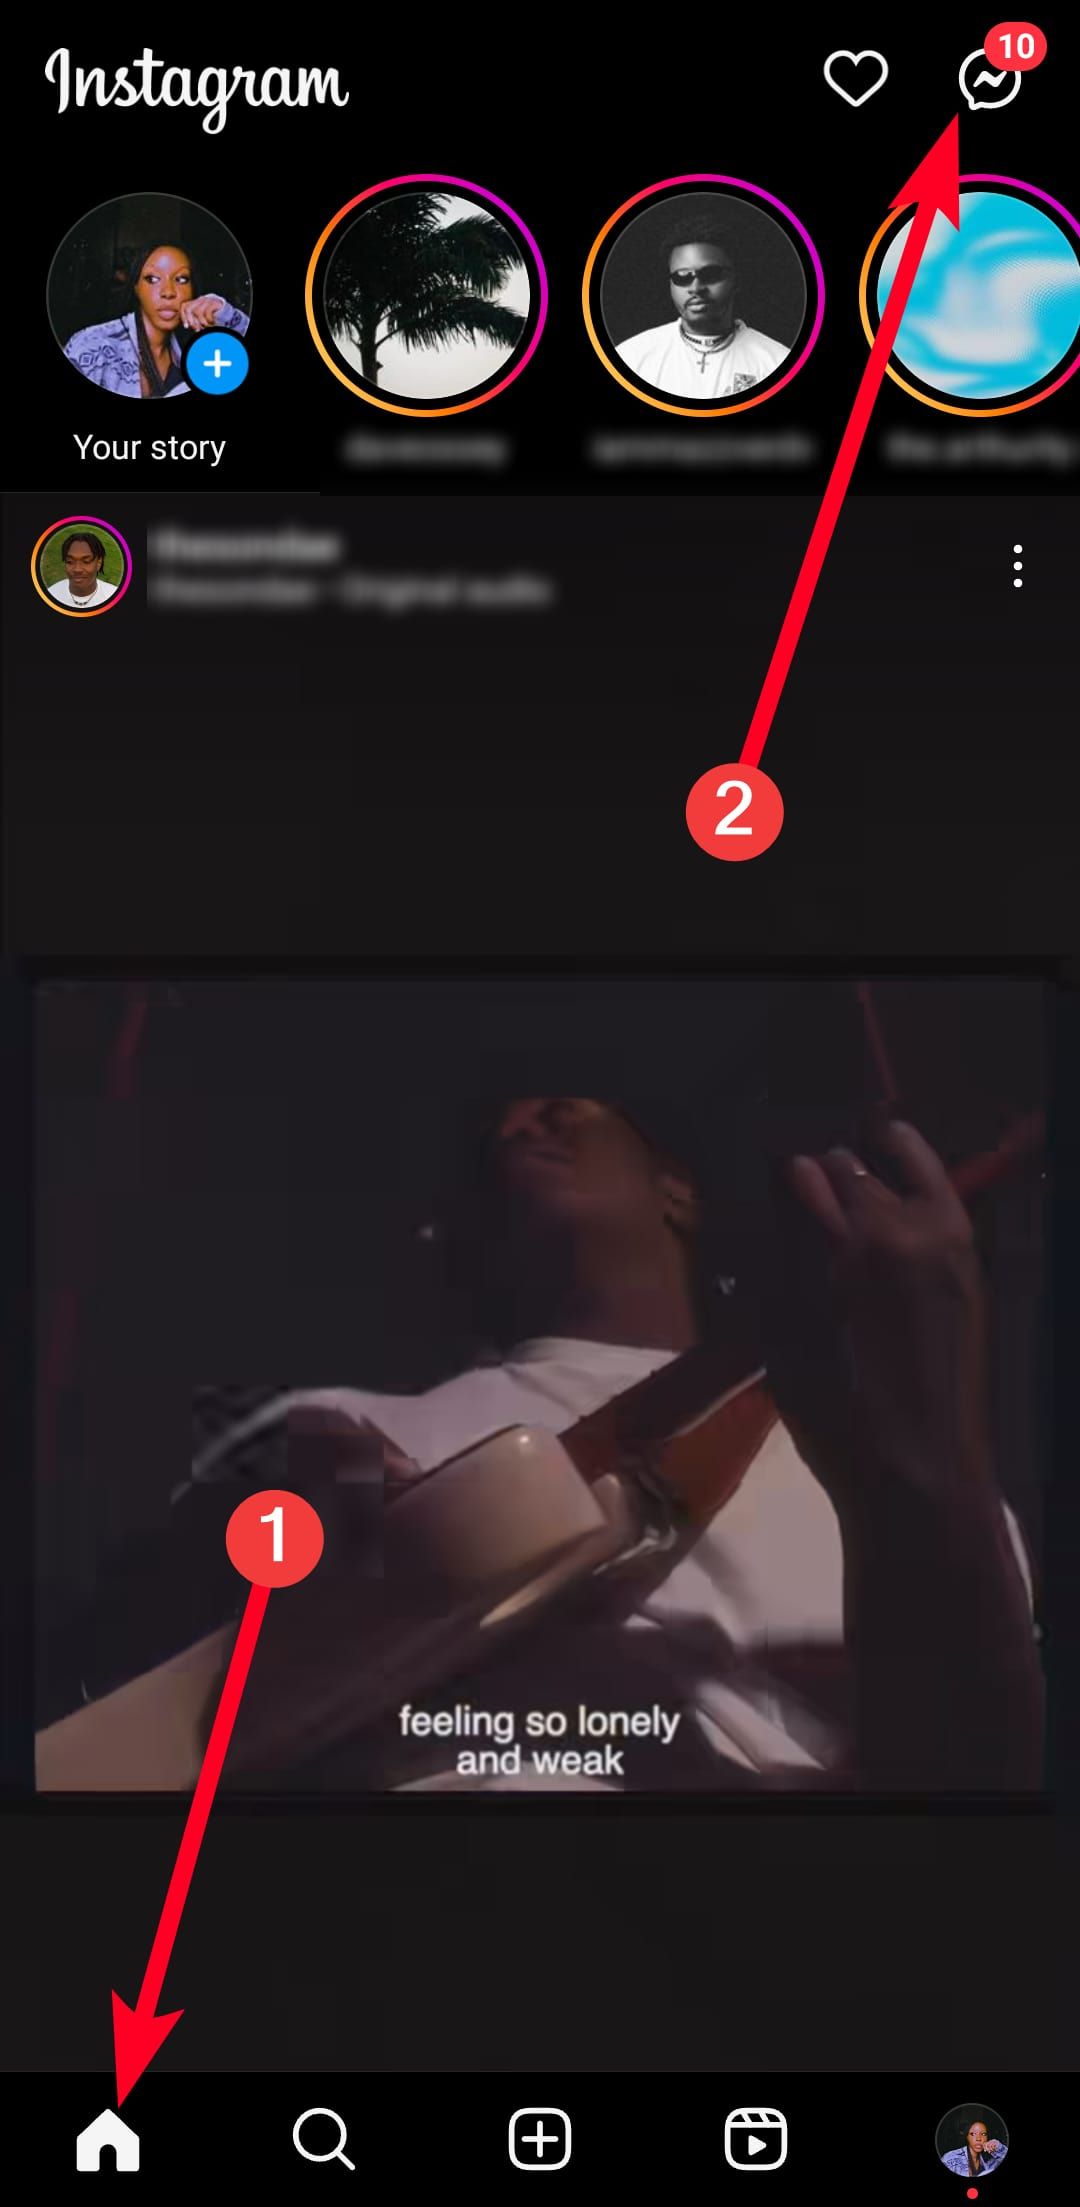 duas setas sólidas vermelhas marcadas como um e dois apontando para o atalho do menu inicial do Instagram no aplicativo